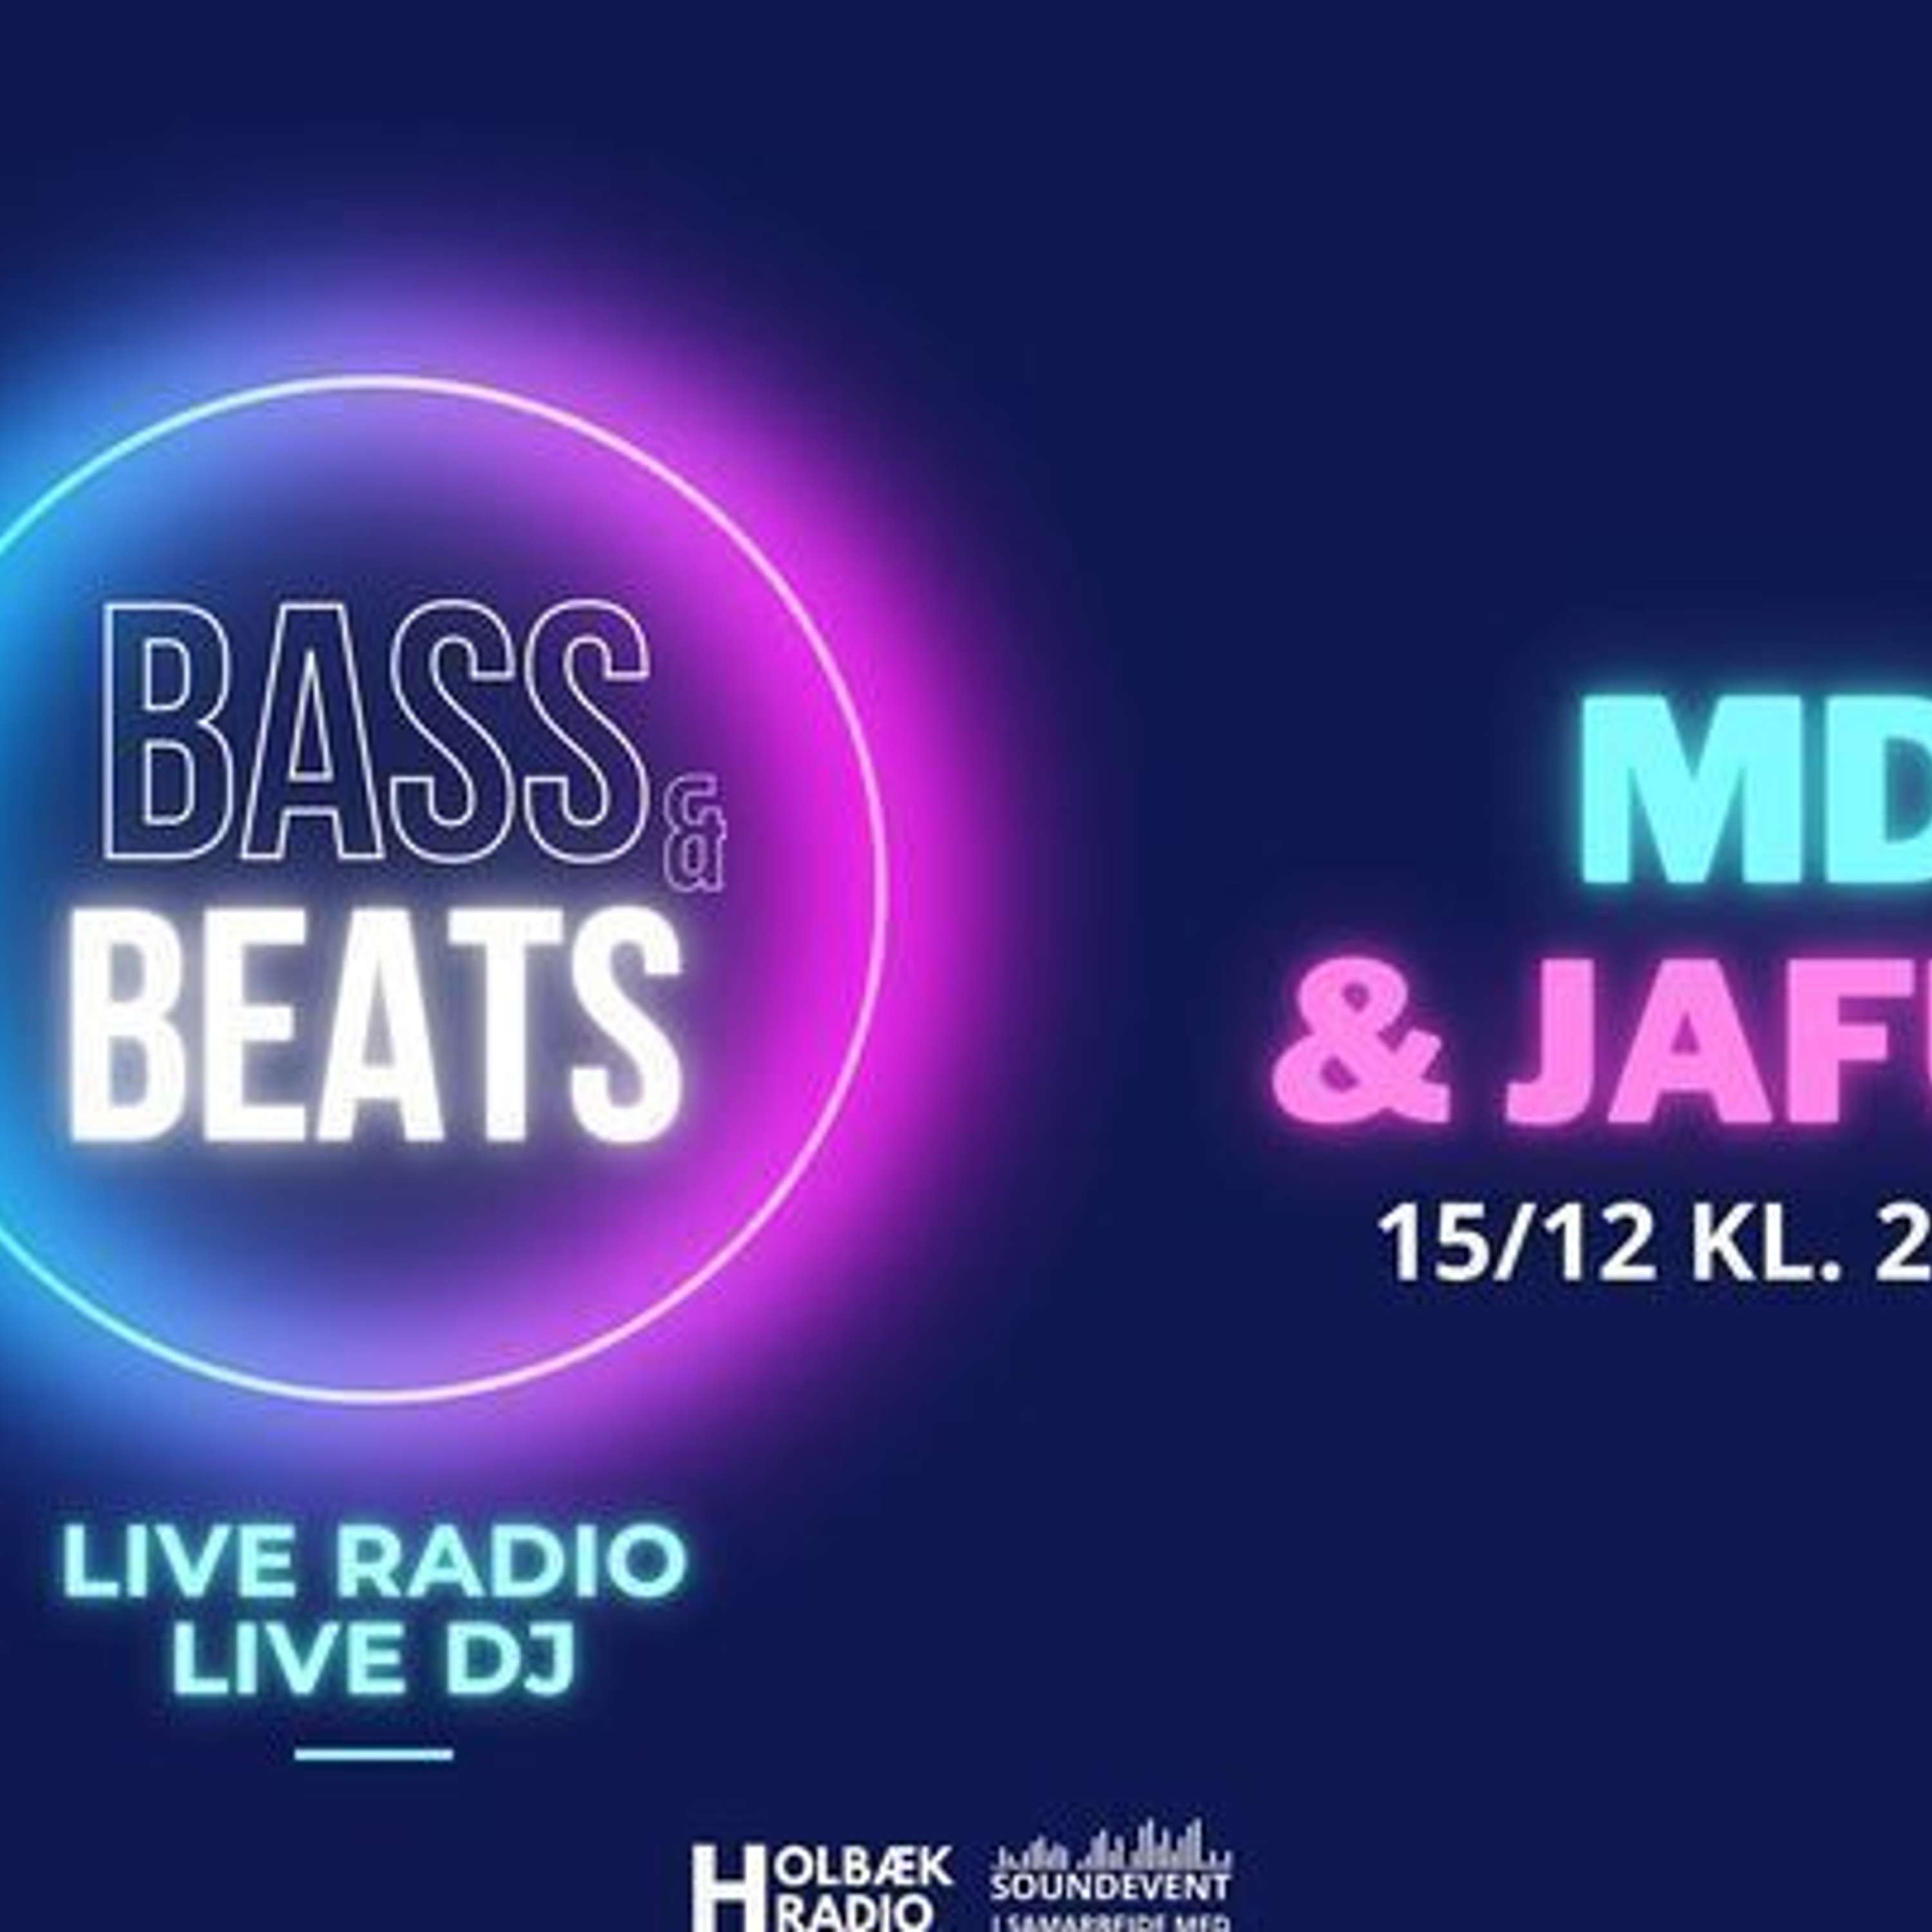 Bass & Beats episode 3 - MD & Jaffuri